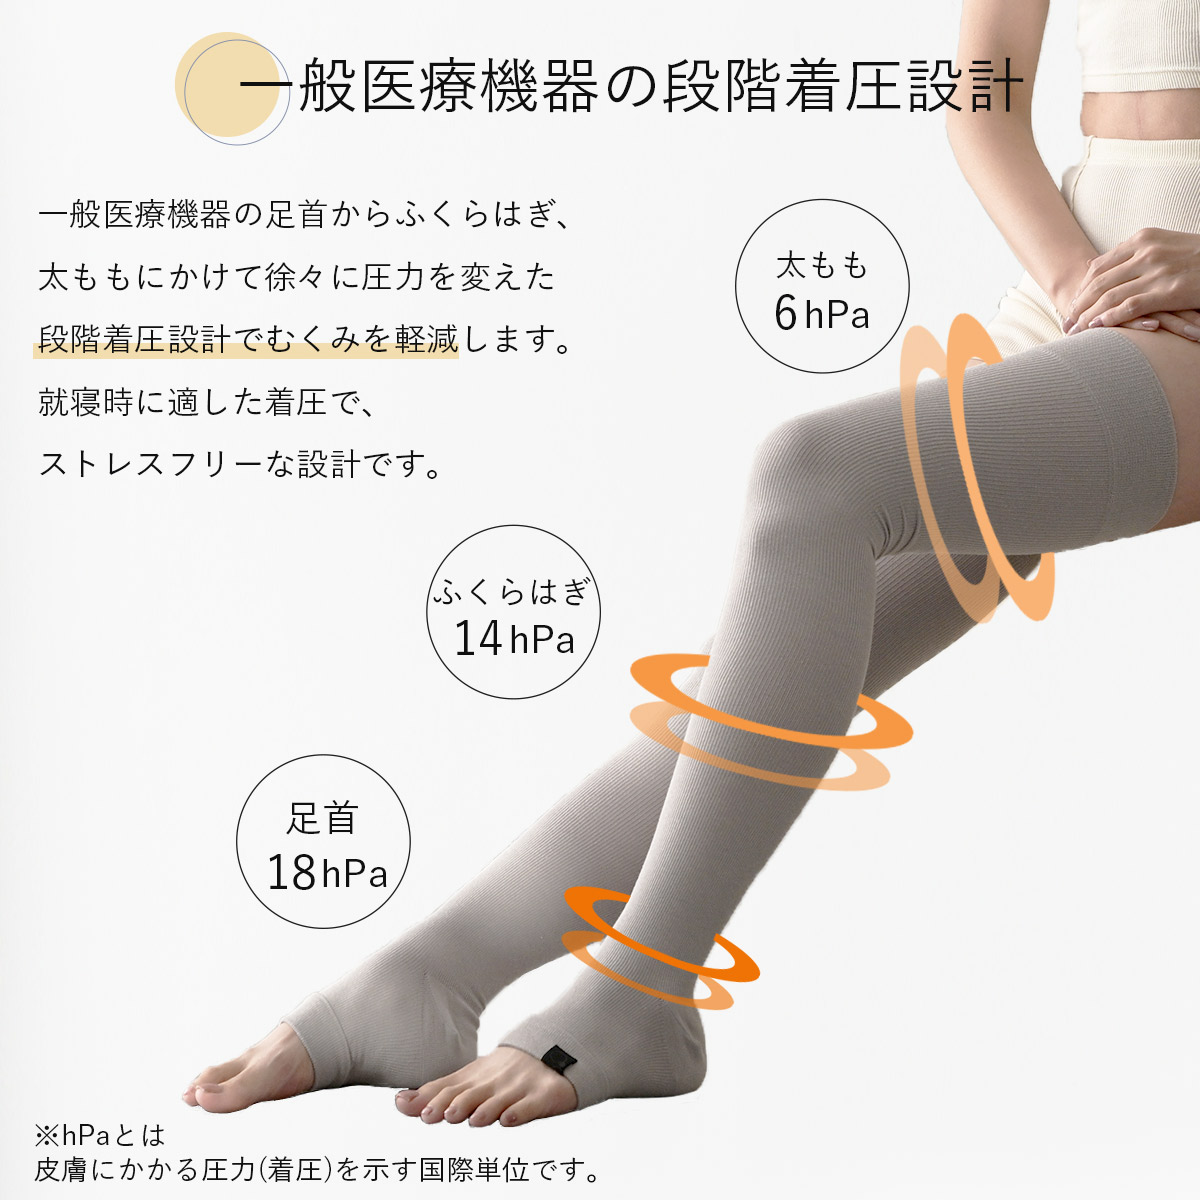 一般医療機器の足首からふくらはぎ、太ももにかけて徐々に圧力を変えた団塊着圧設計でむくみを軽減します。就寝時に適した着圧で、ストレスフリーな設計です。